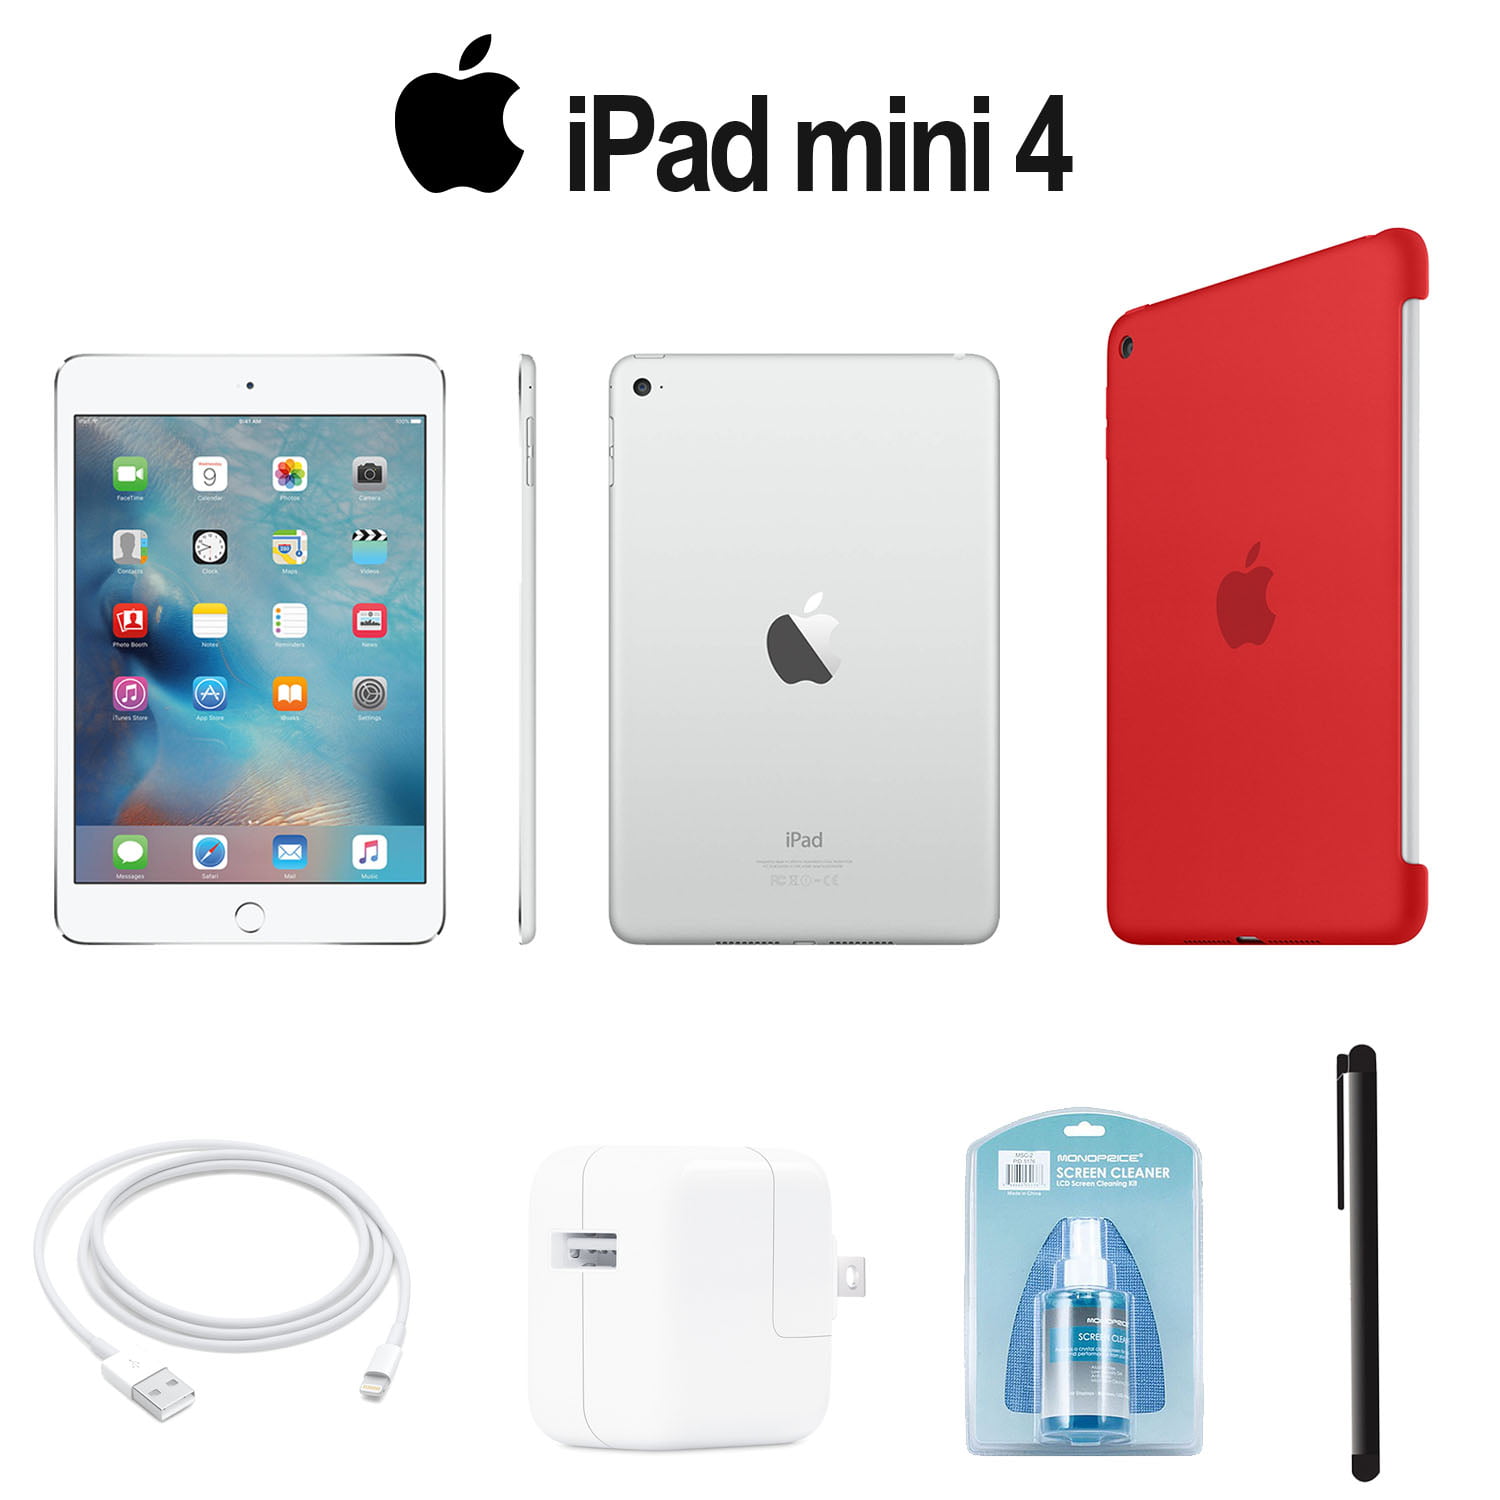 Apple 128GB iPad mini 4 (Wi-Fi Only, Silver) With Orange Smart